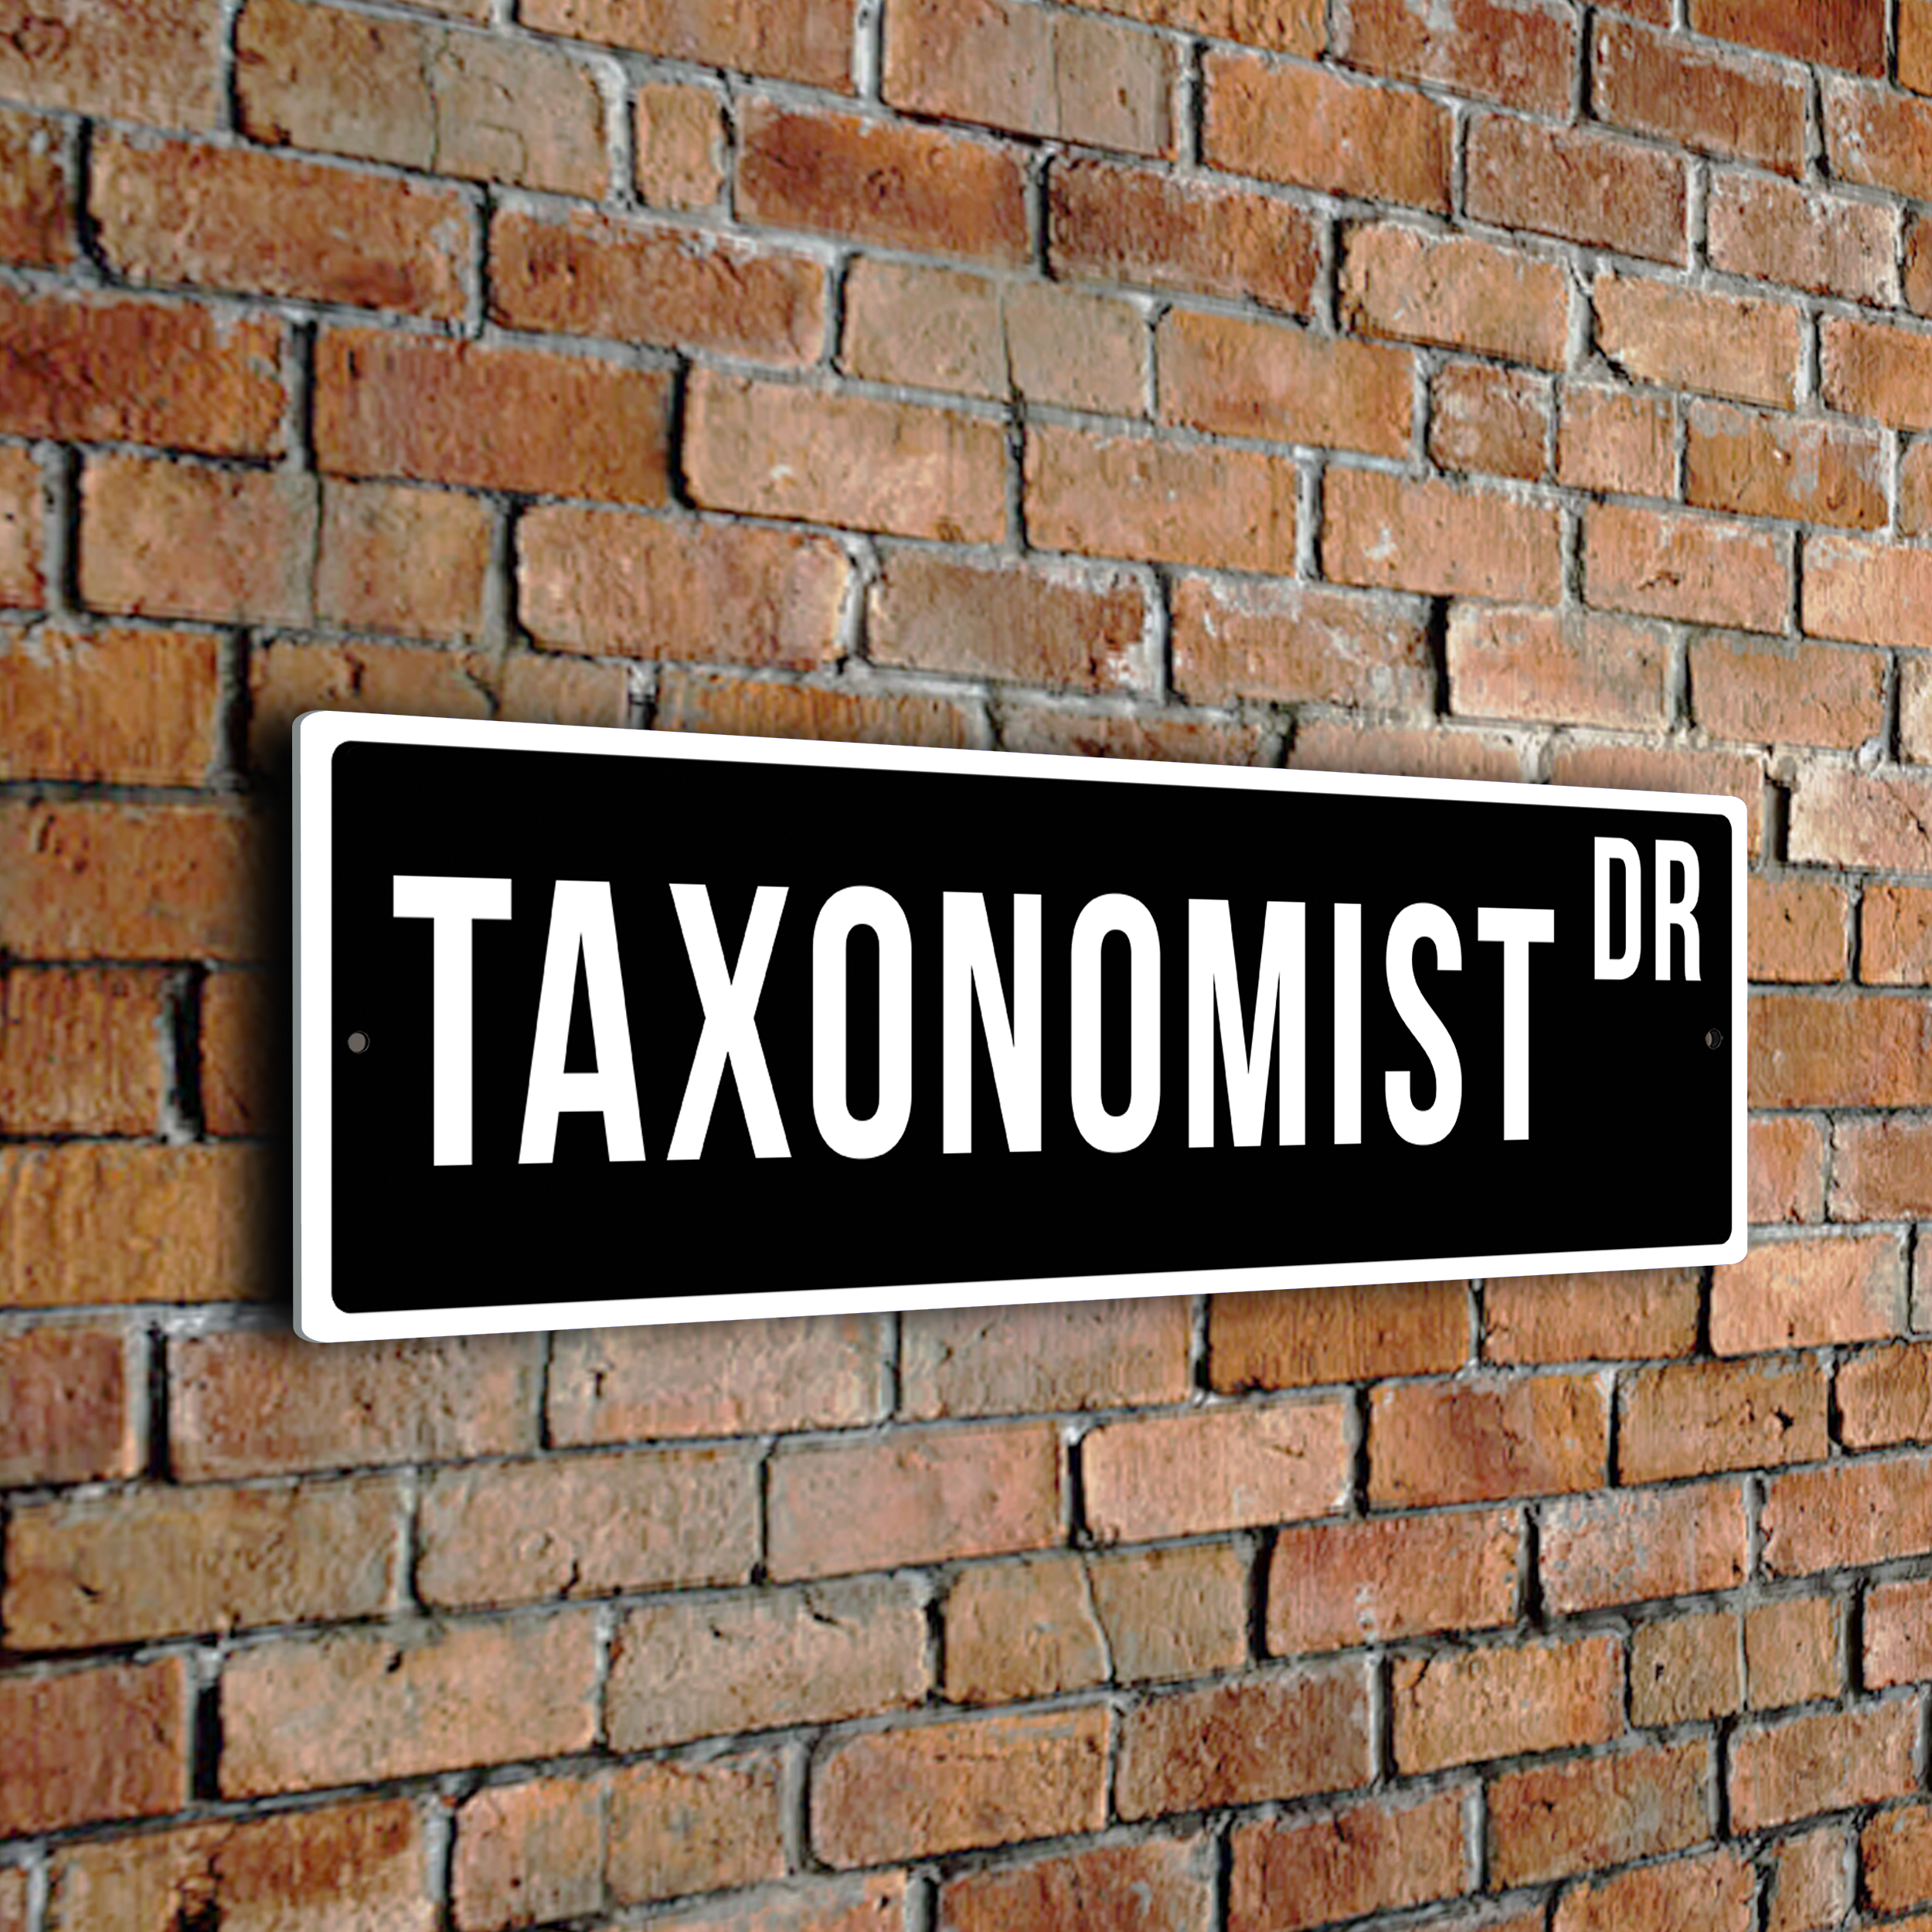 Taxonomist street sign